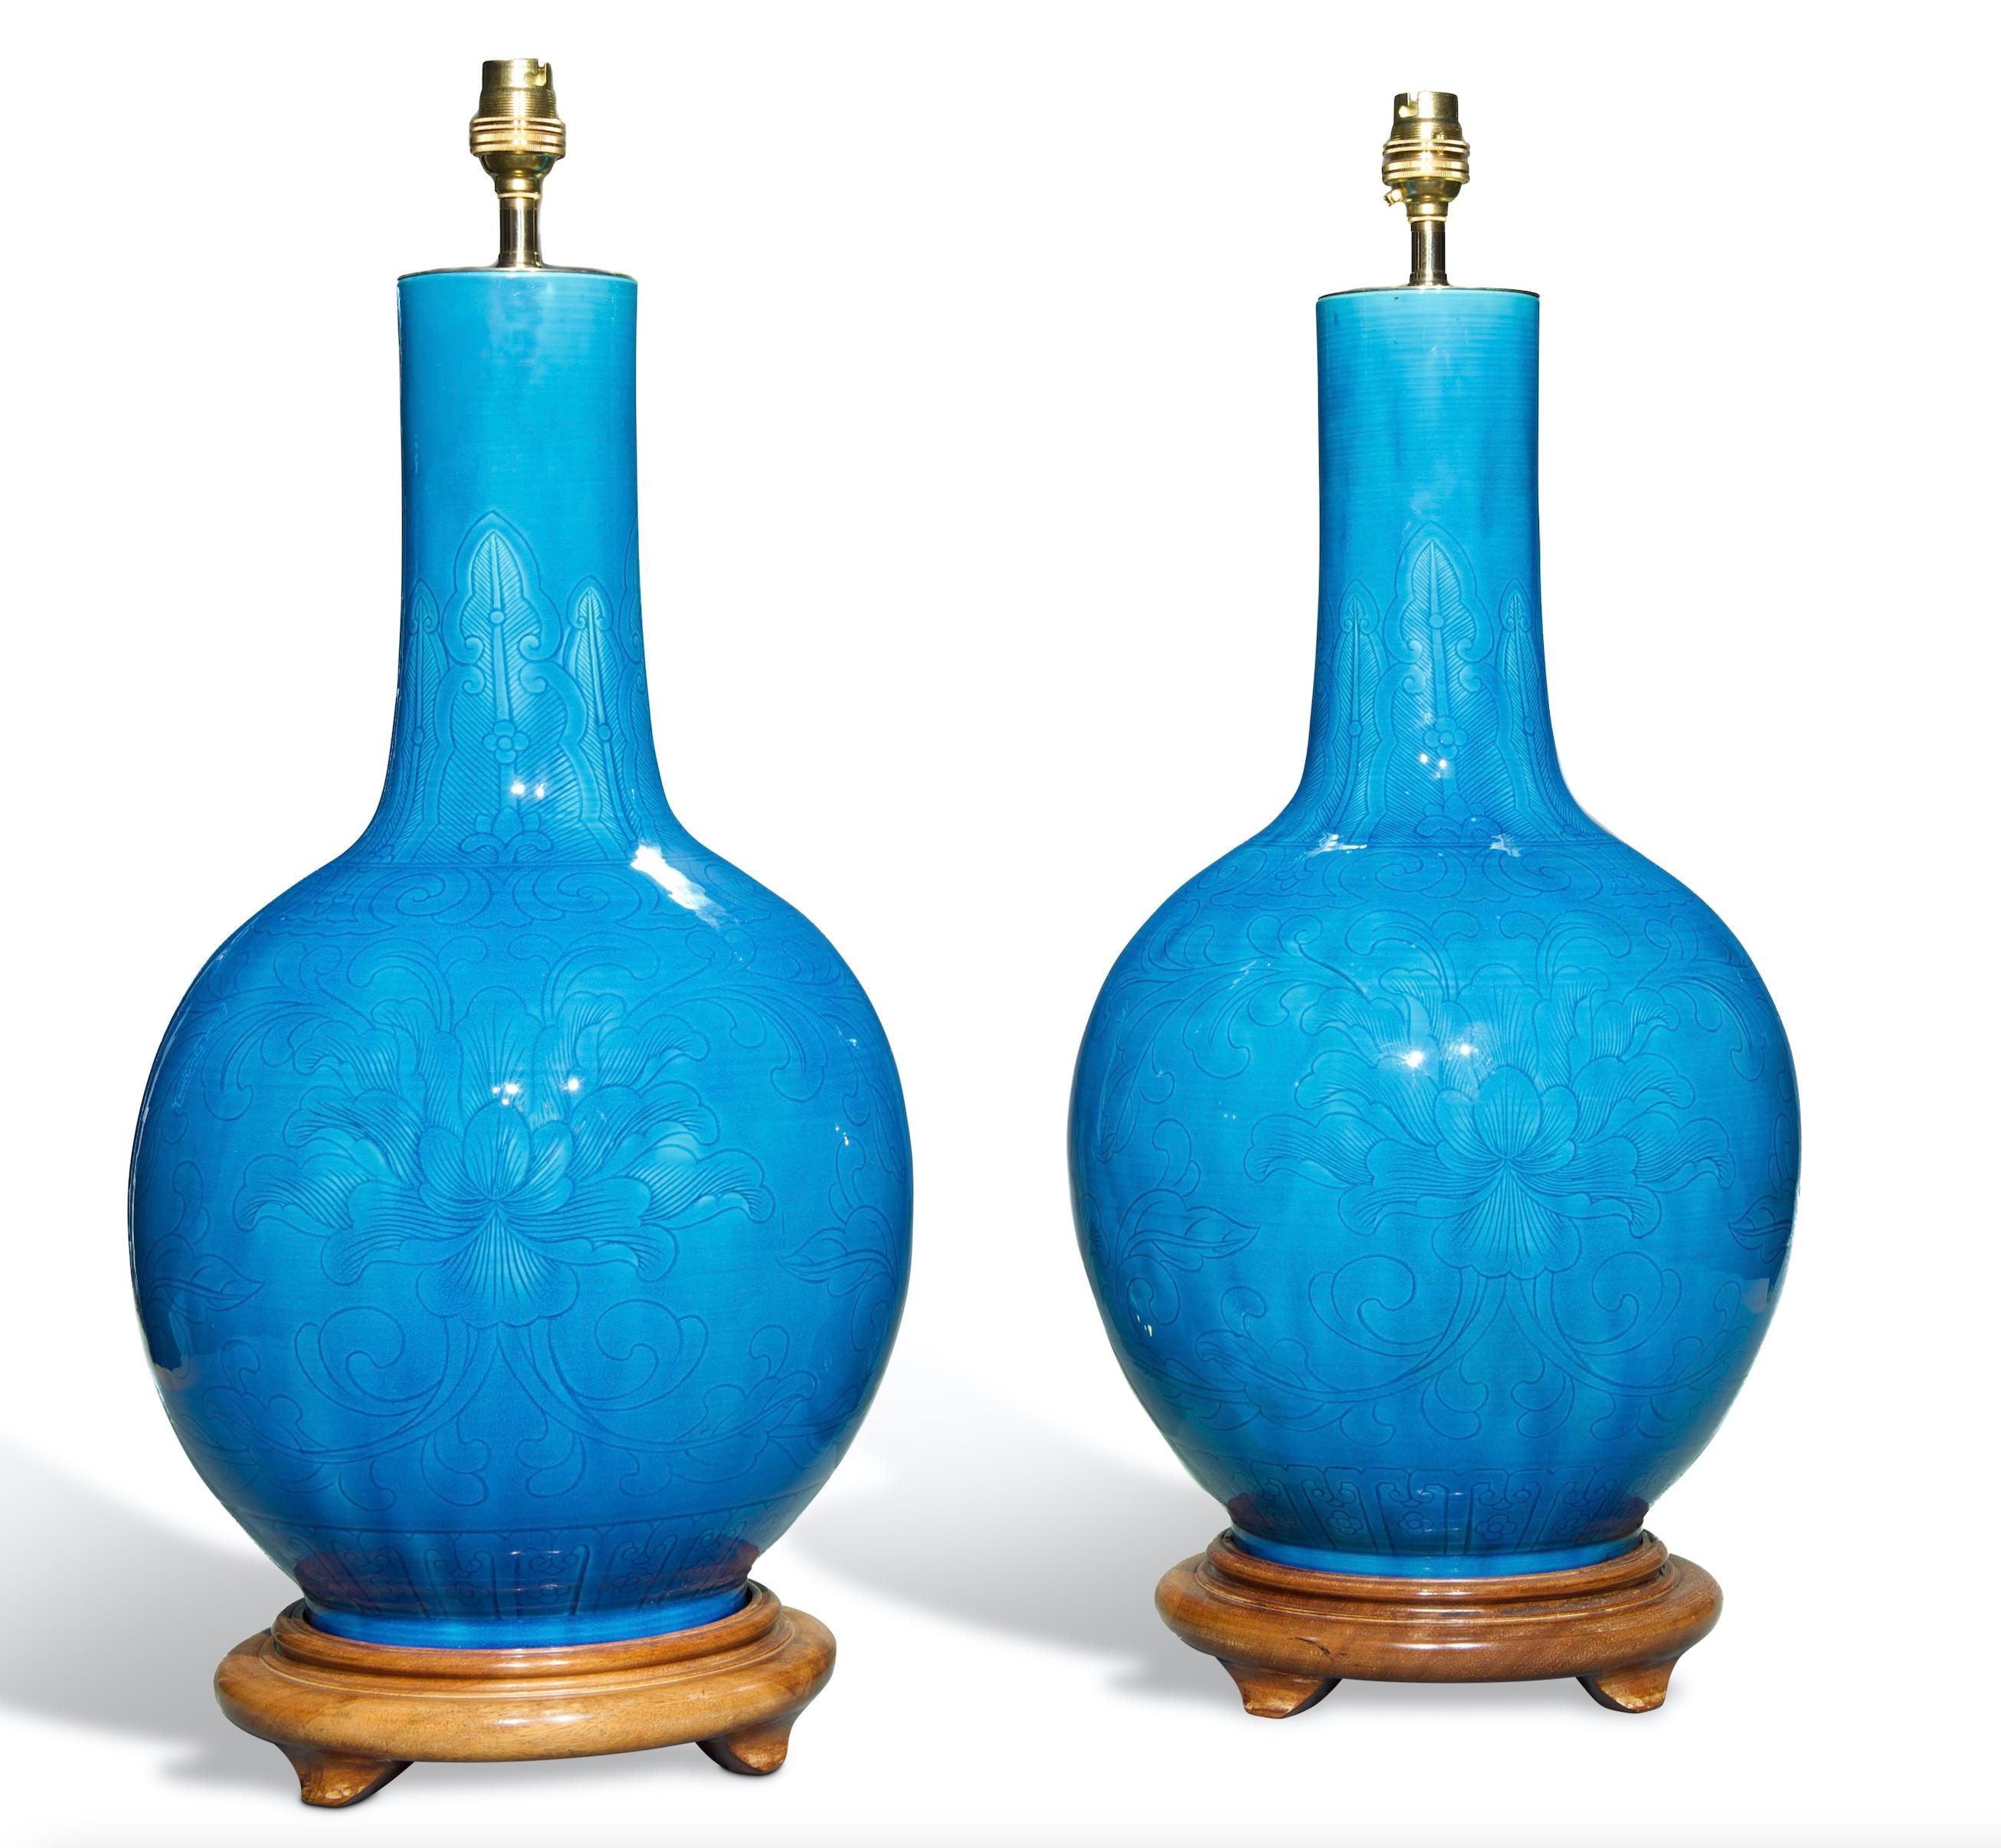 Superbe paire de vases en porcelaine chinoise de la fin de la dynastie Qing, avec une magnifique glaçure turquoise et un subtil décor de lignes florales et de feuillages tourbillonnants, aujourd'hui montés comme lampes sur des bases en bois